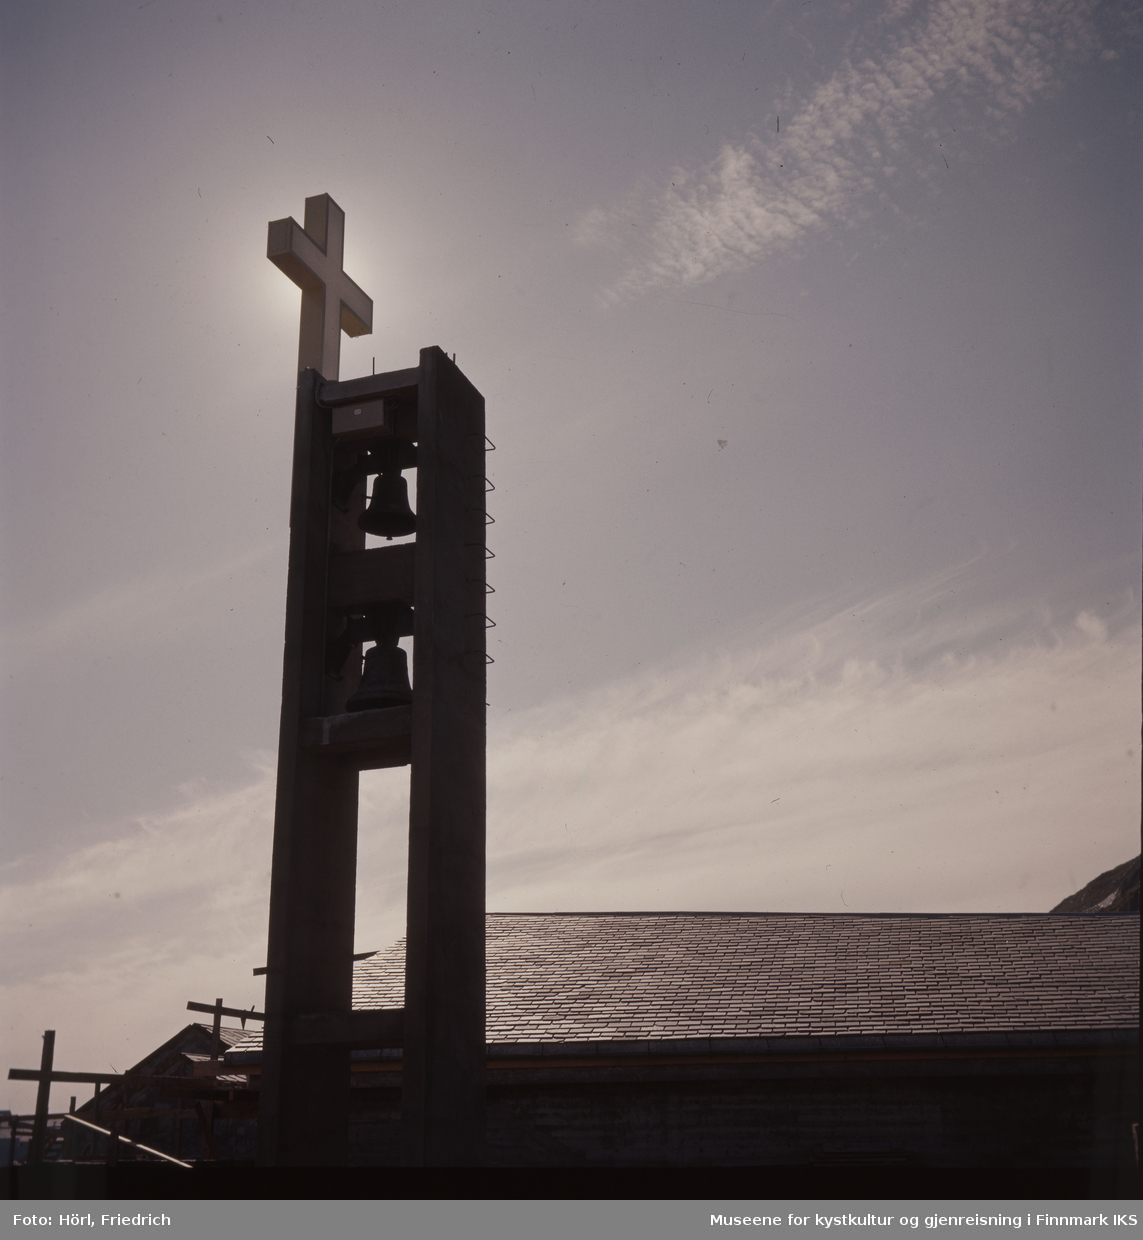 Kirketårnet til Den katolske kike St. Mikael i Hammerfest med kors og klokkene er fotografert i motlyset. Tydelig ser man kirketaket som er tekket med rektangulært takskifer. Til venstre for bygget står det fortsatt noe stilas.